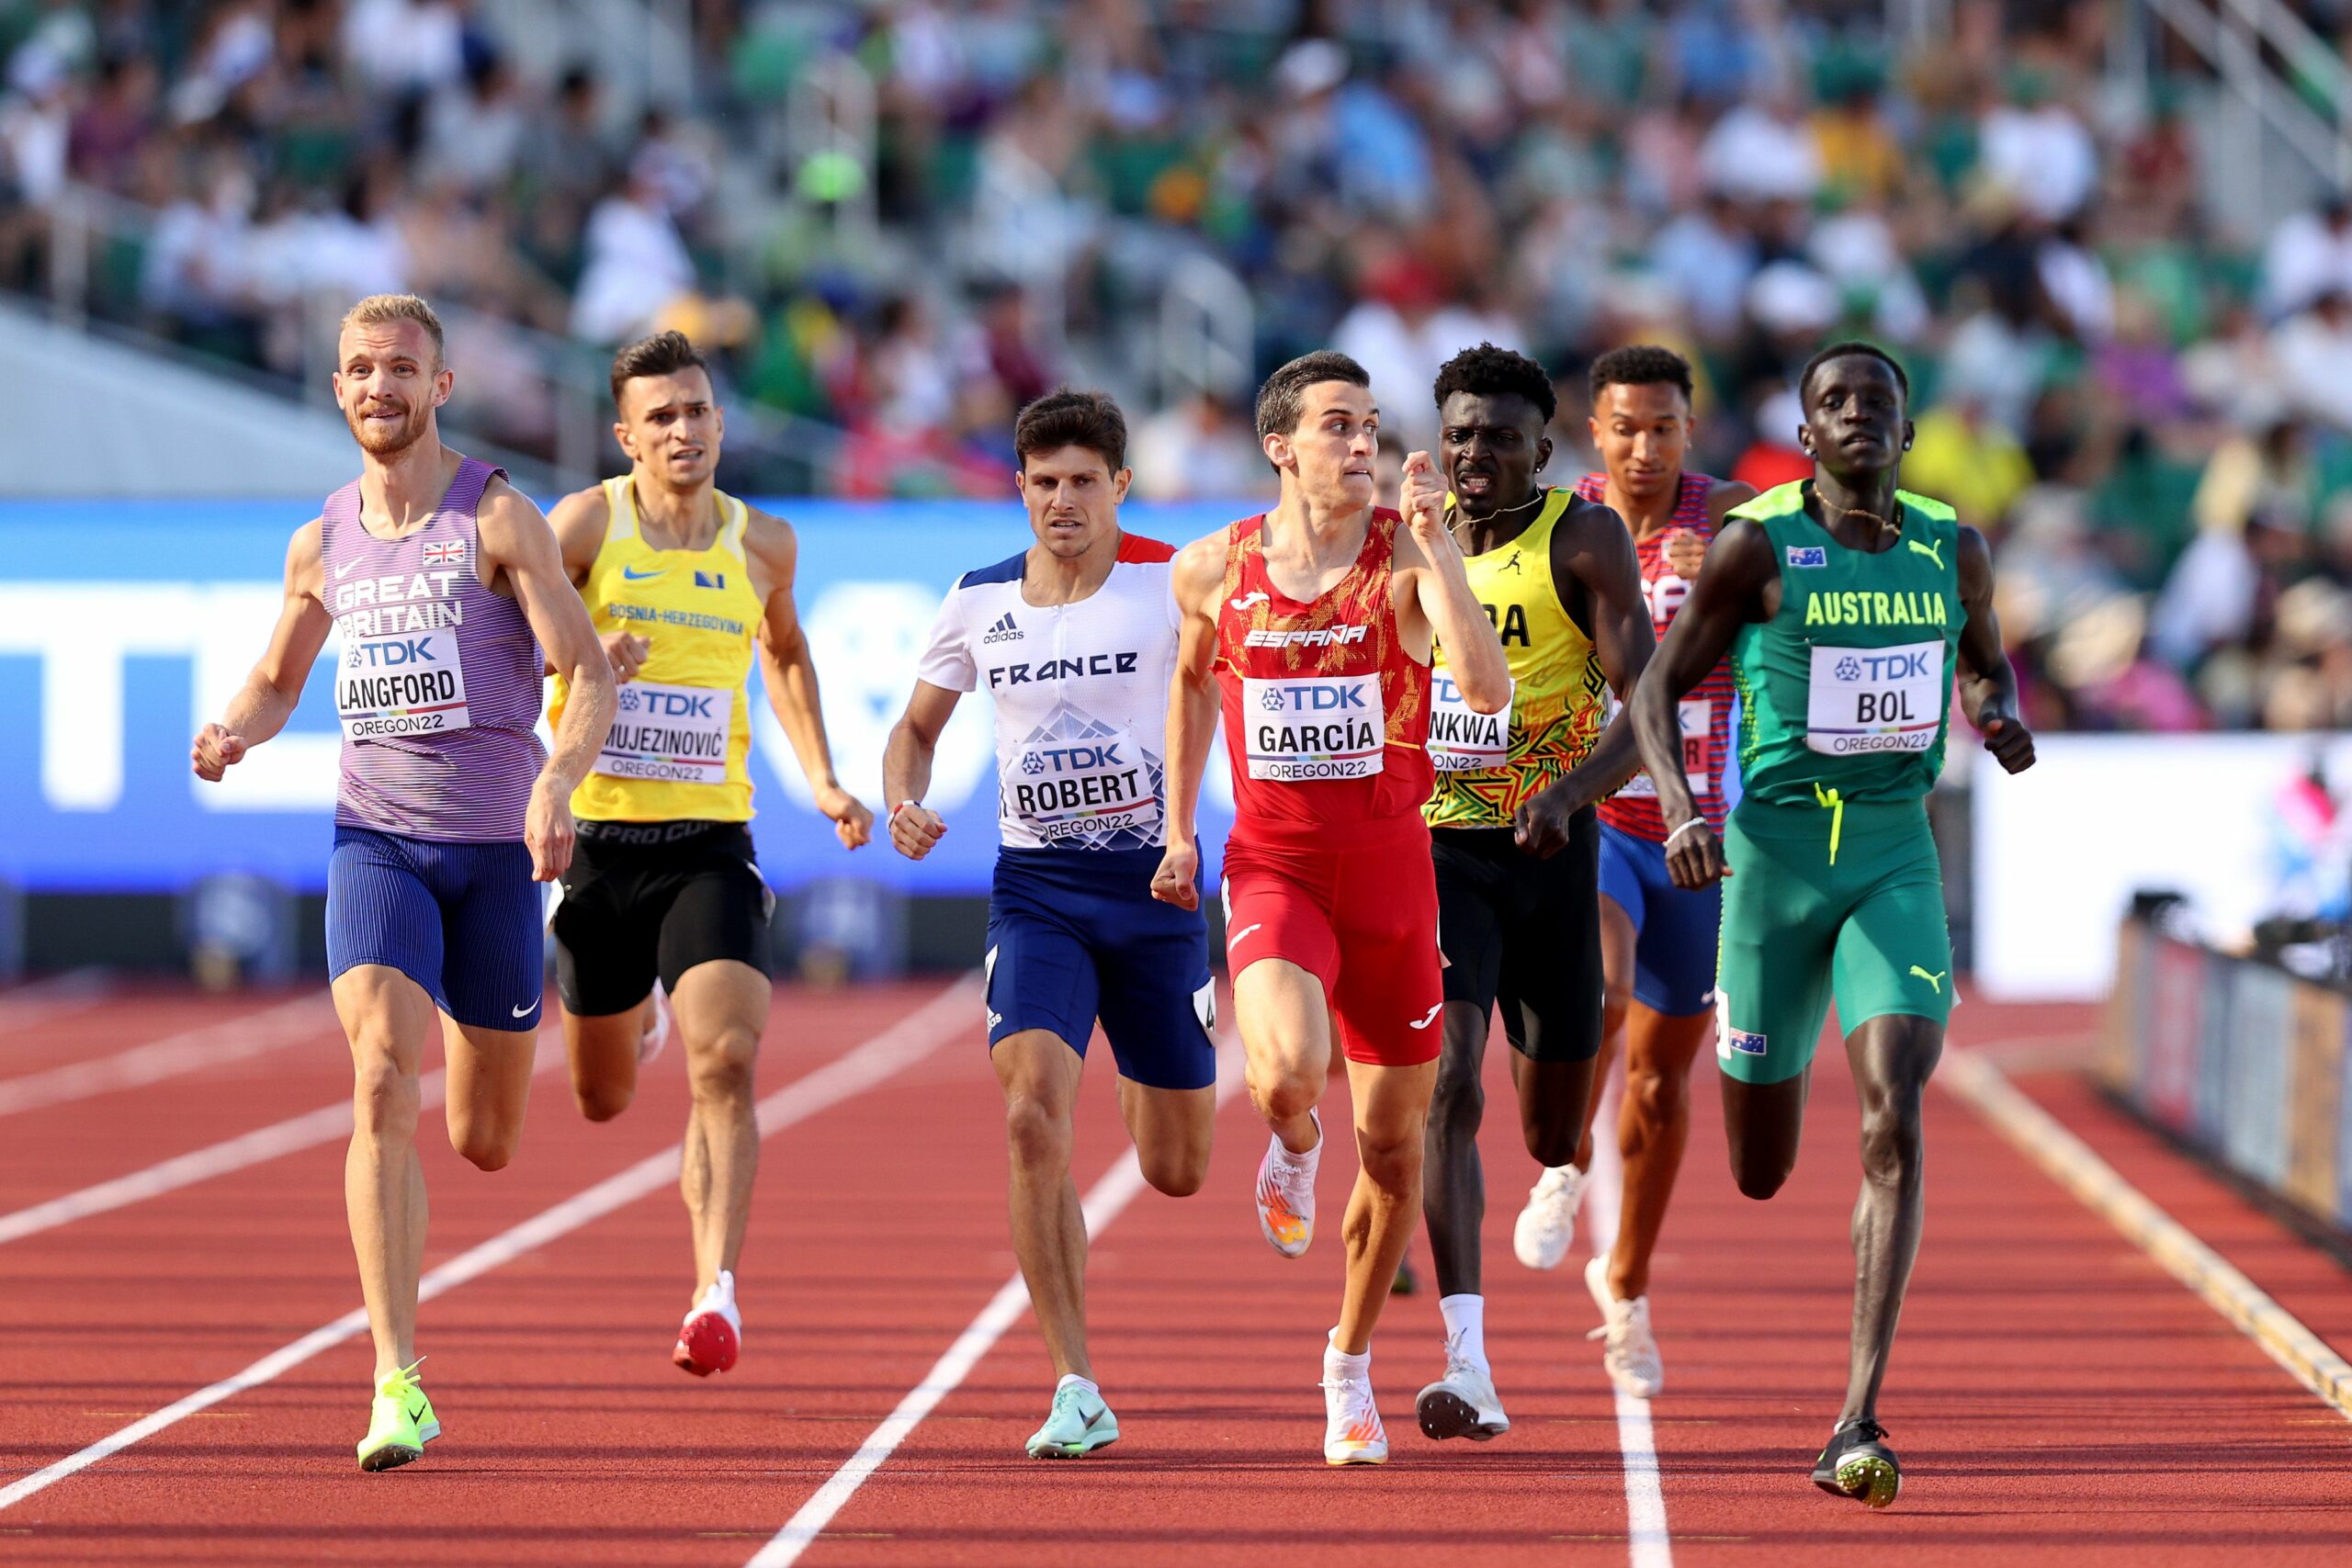 Juegos Olímpicos: se comenzarán a entregar premios en dólares a medallistas de oro en atletismo | Canal Showsport